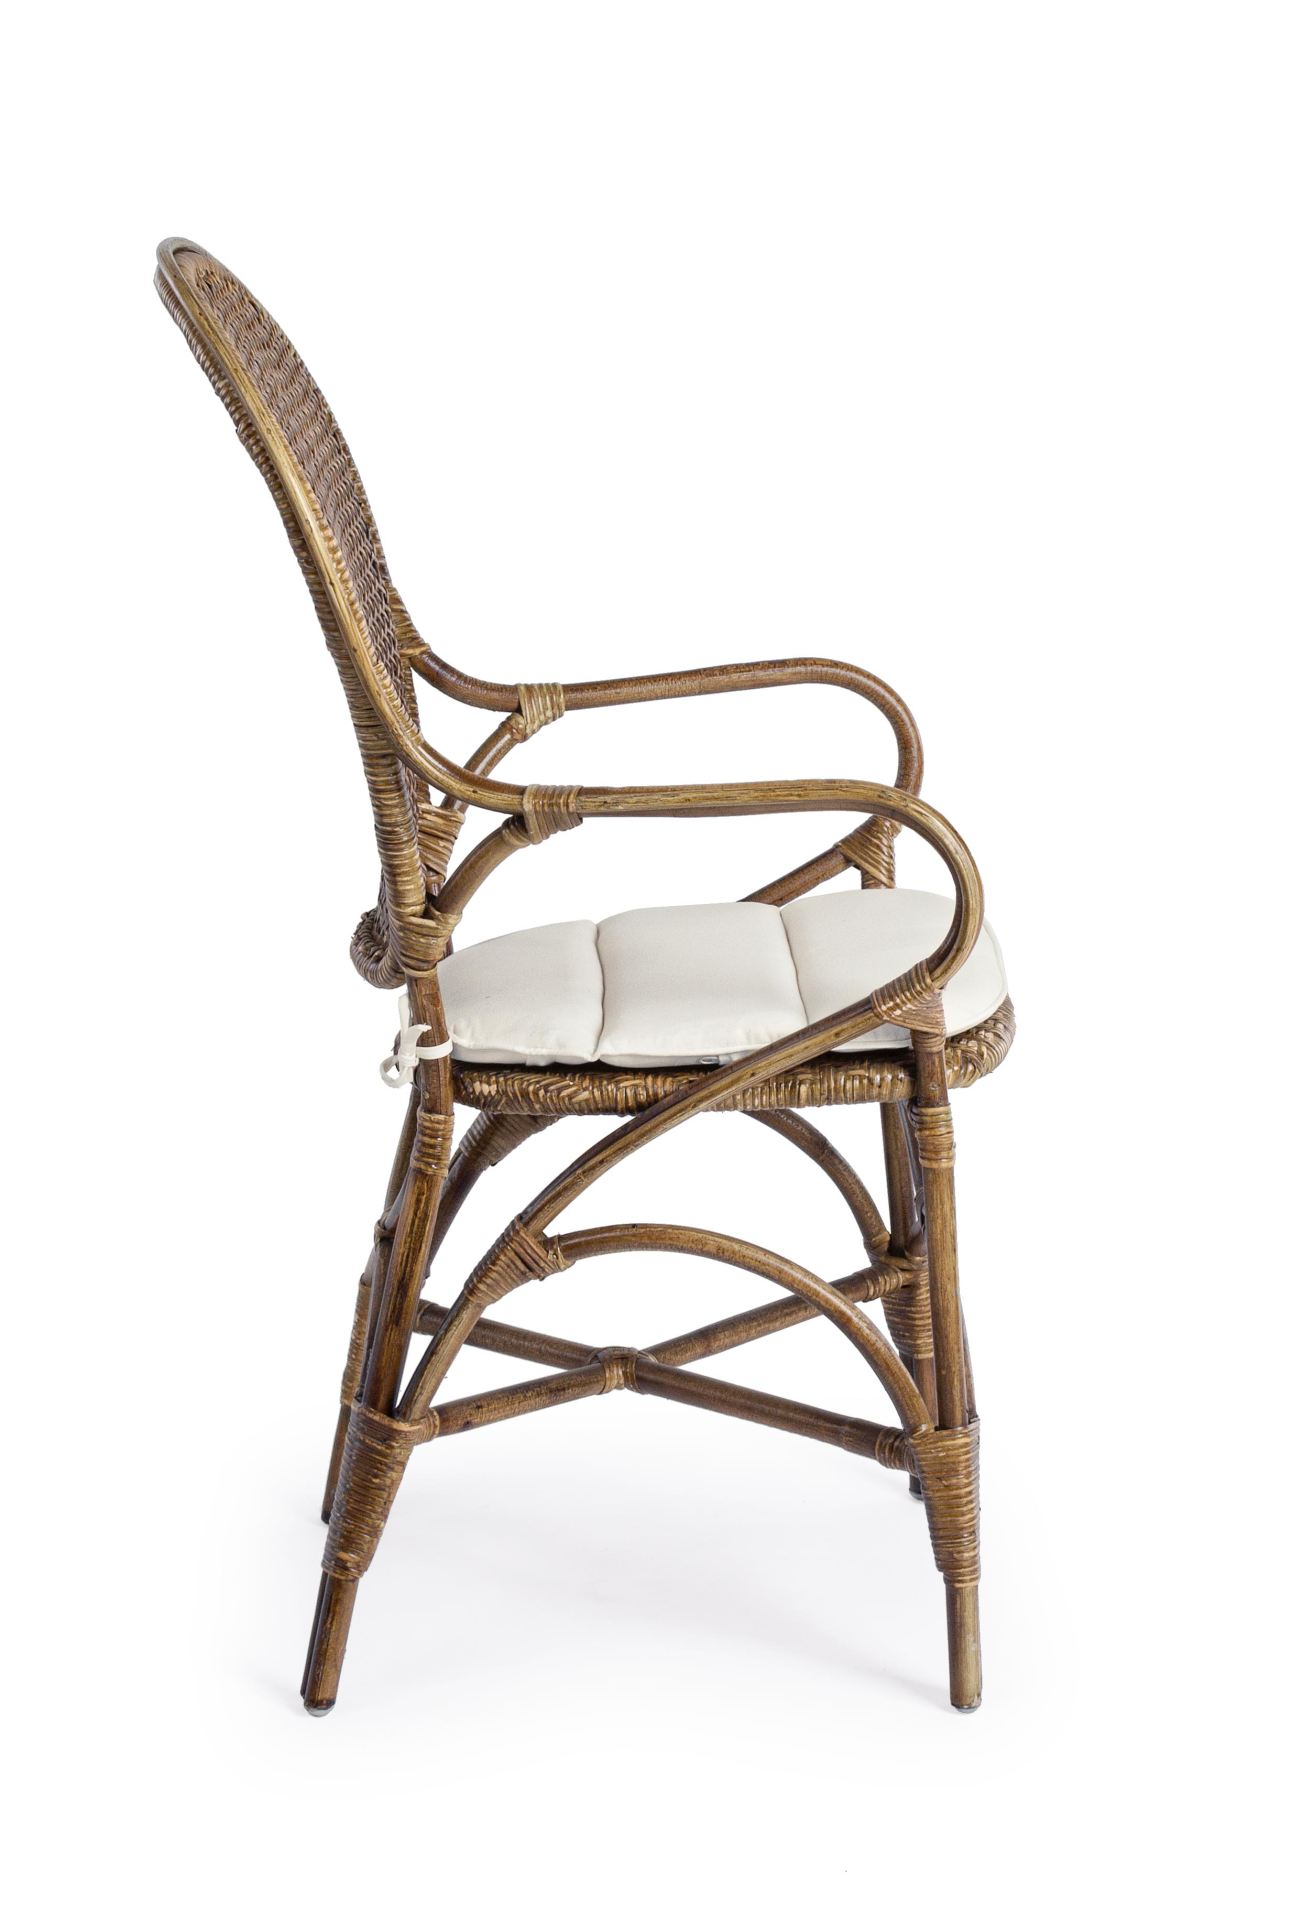 Der Stuhl Edelina überzeugt mit seinem klassischem Design. Gefertigt wurde der Stuhl aus Rattan, welches einen braunen Farbton besitzt. Der Stuhl beinhaltet ein Sitzkissen aus Baumwolle. Die Sitzhöhe beträgt 47 cm.